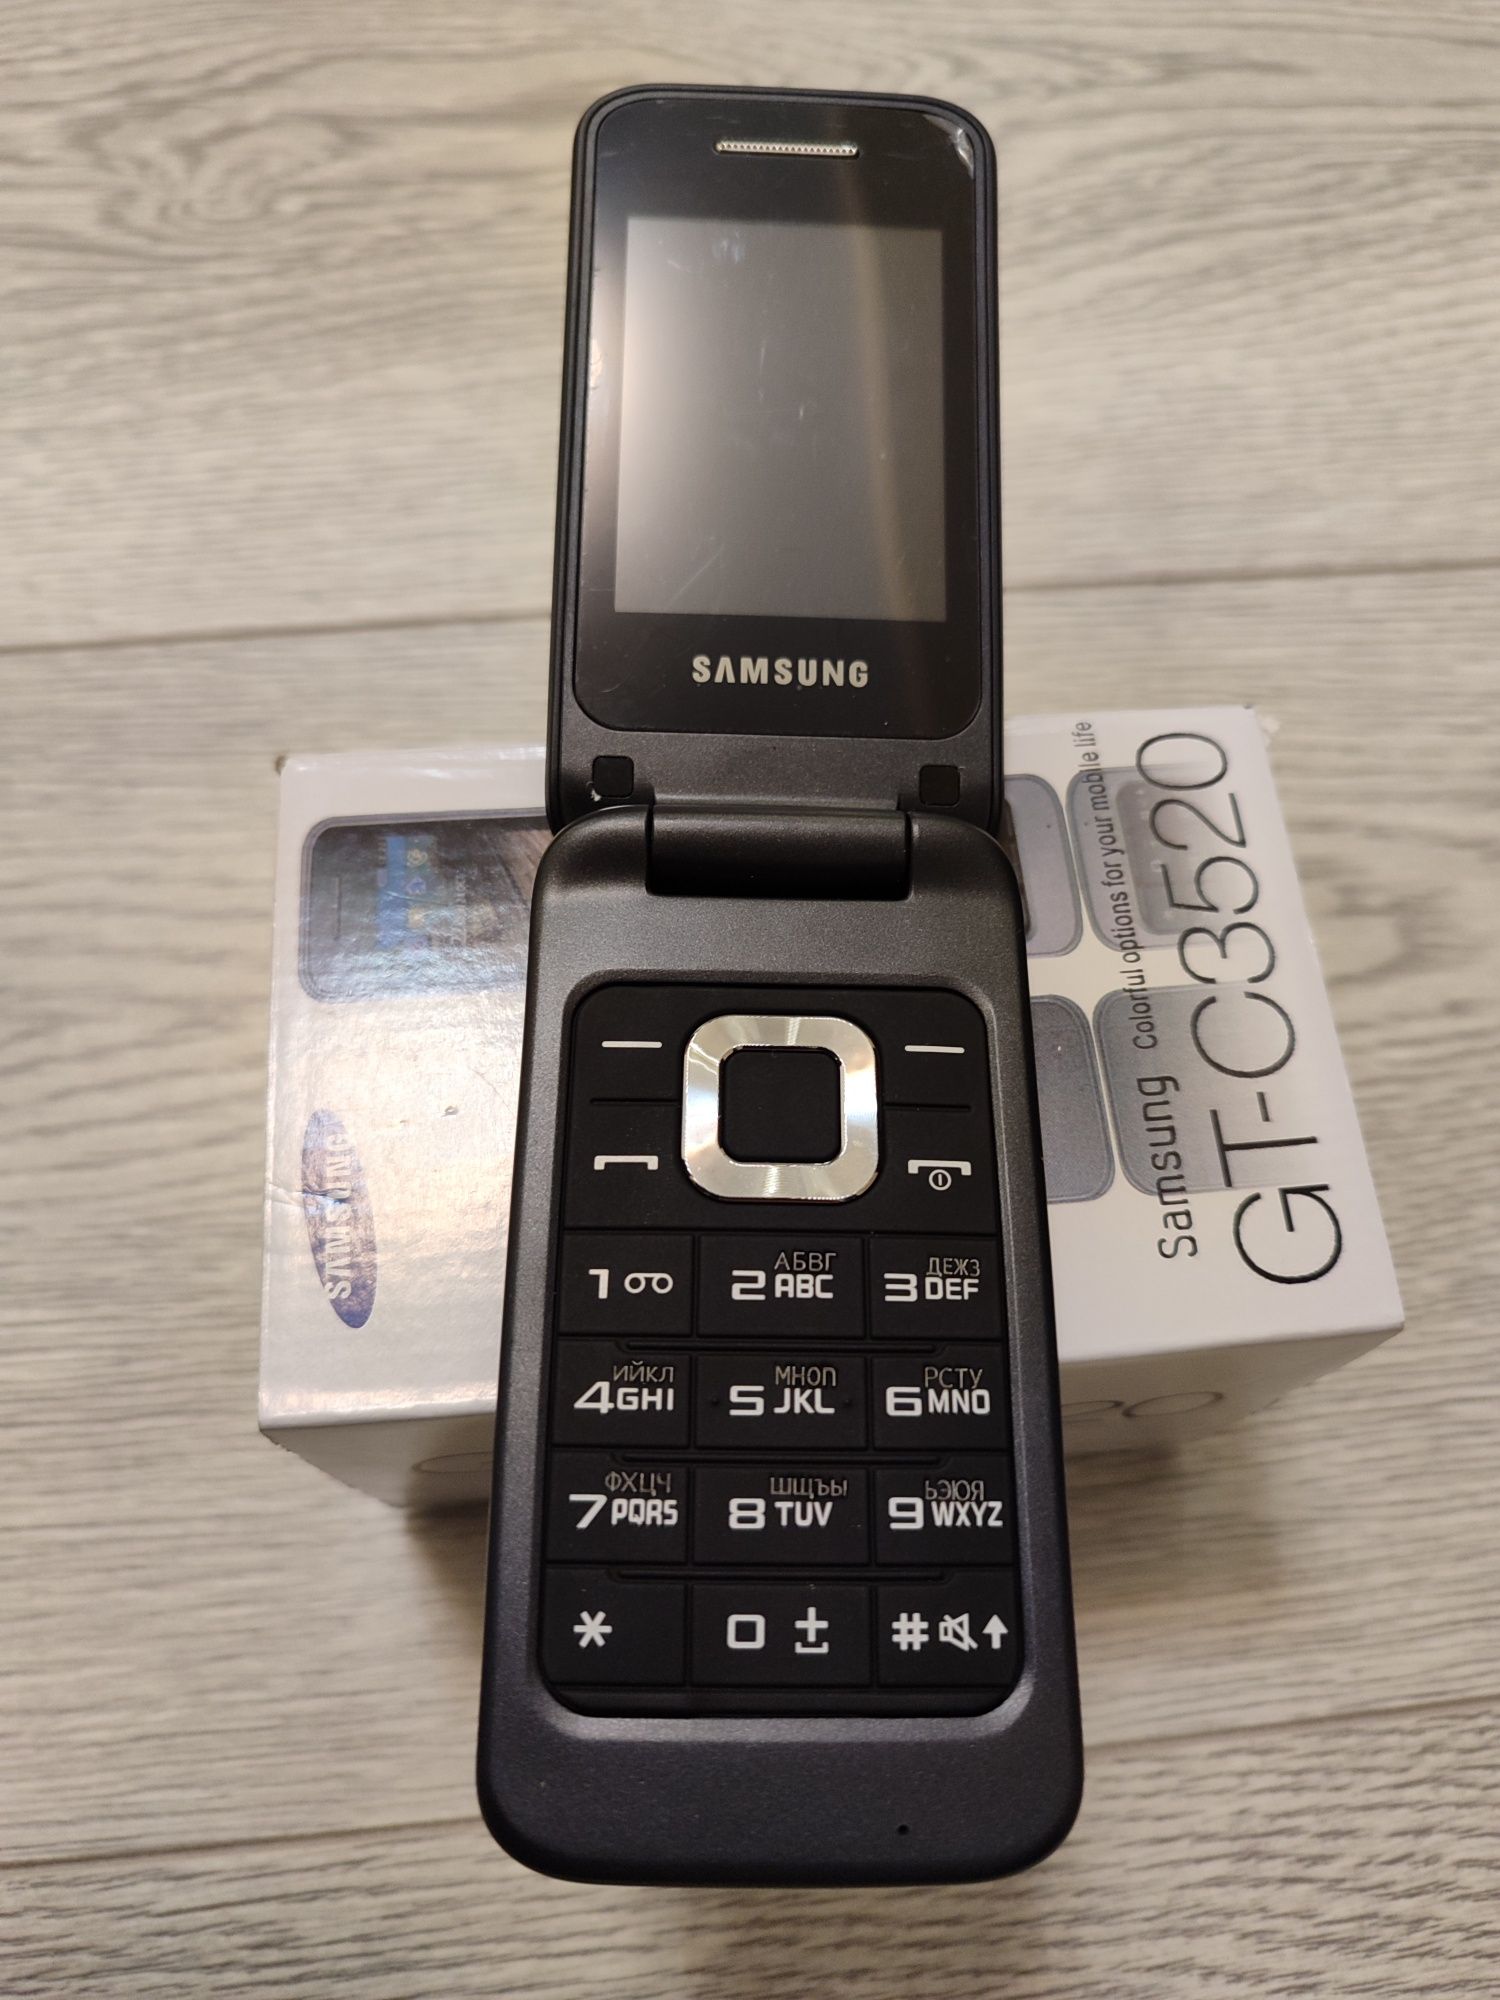 Мобильный телефон Samsung C3520 все цвета  раскладушка 800 мАч